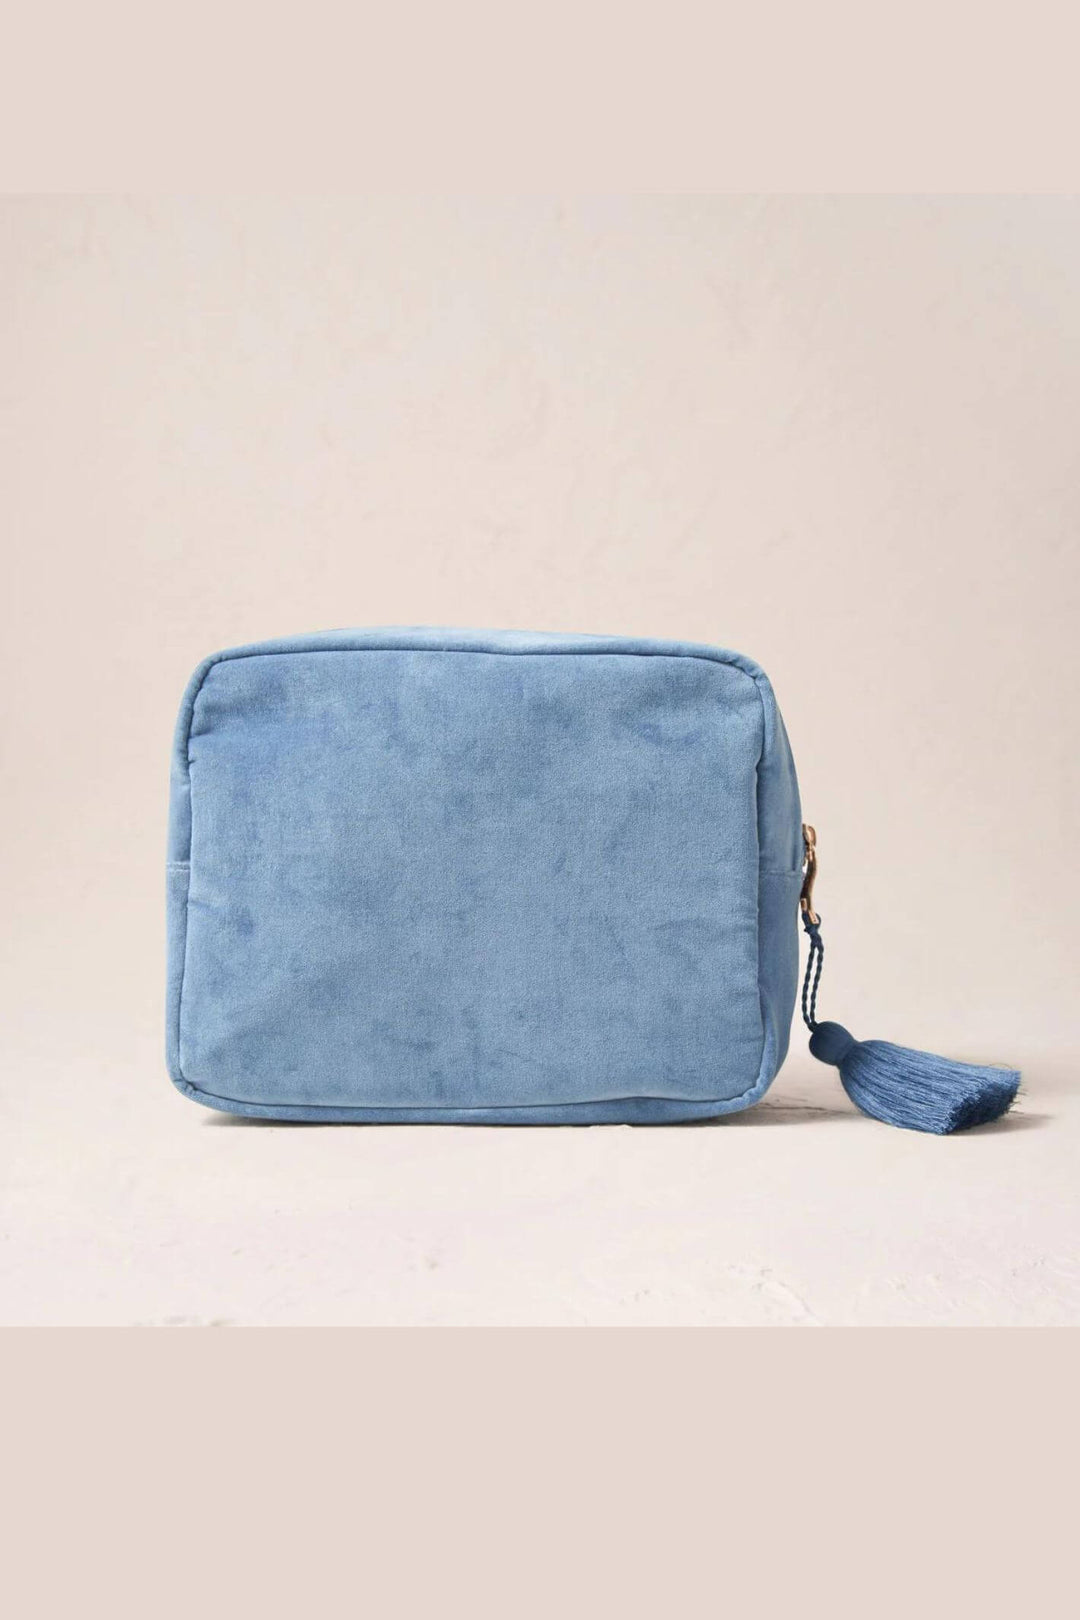 Elizabeth Scarlett Dusky Blue Love Velvet Wash Bag